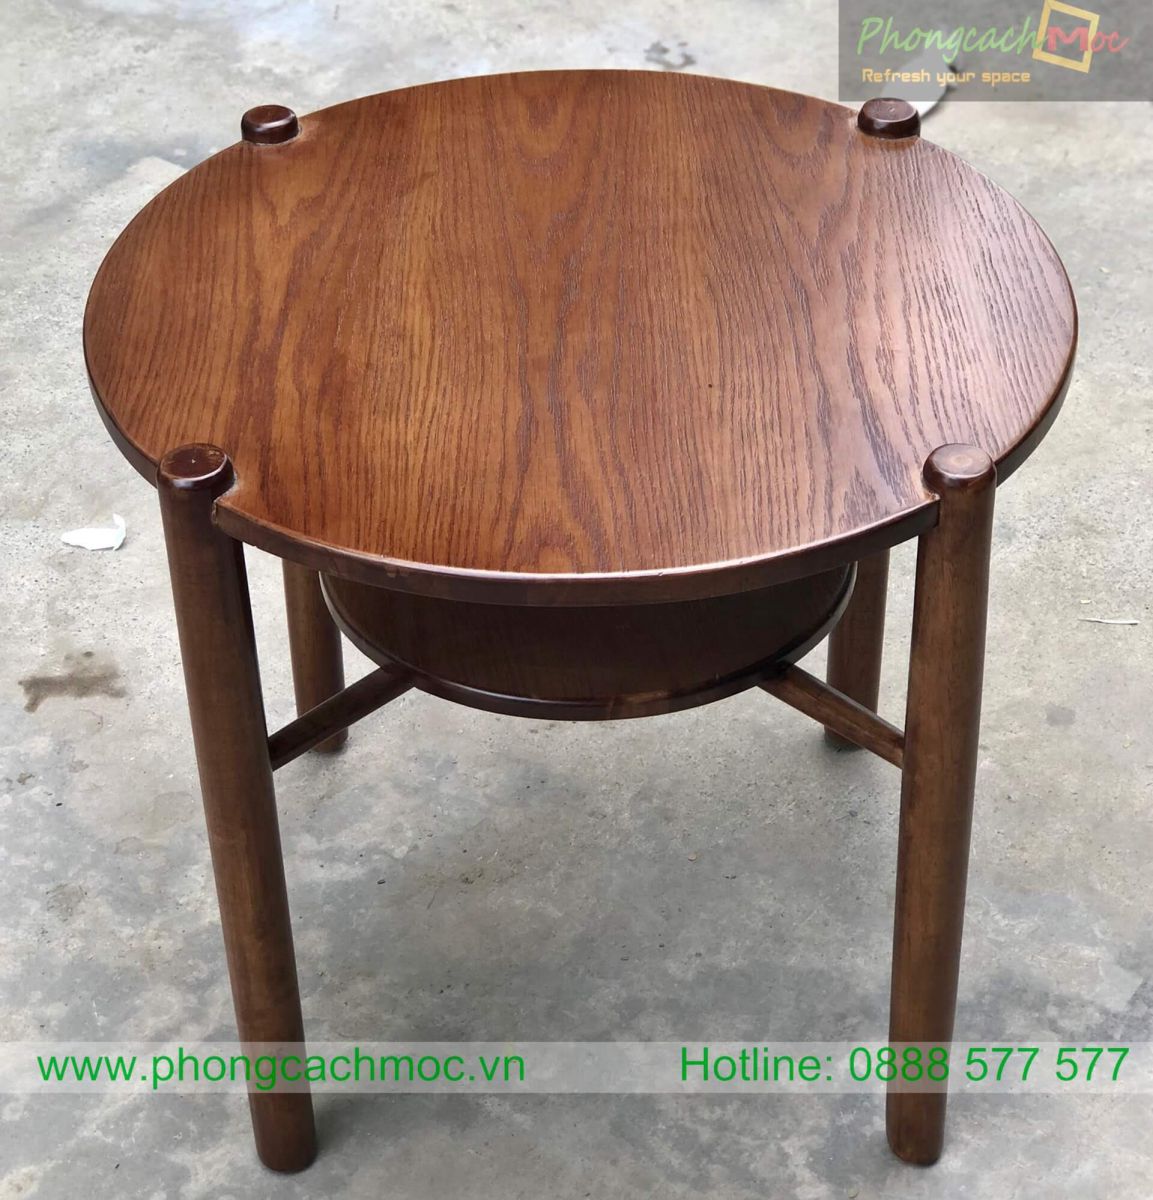 pcm thiết kế mẫu bàn cafe mc212 chất liệu gỗ